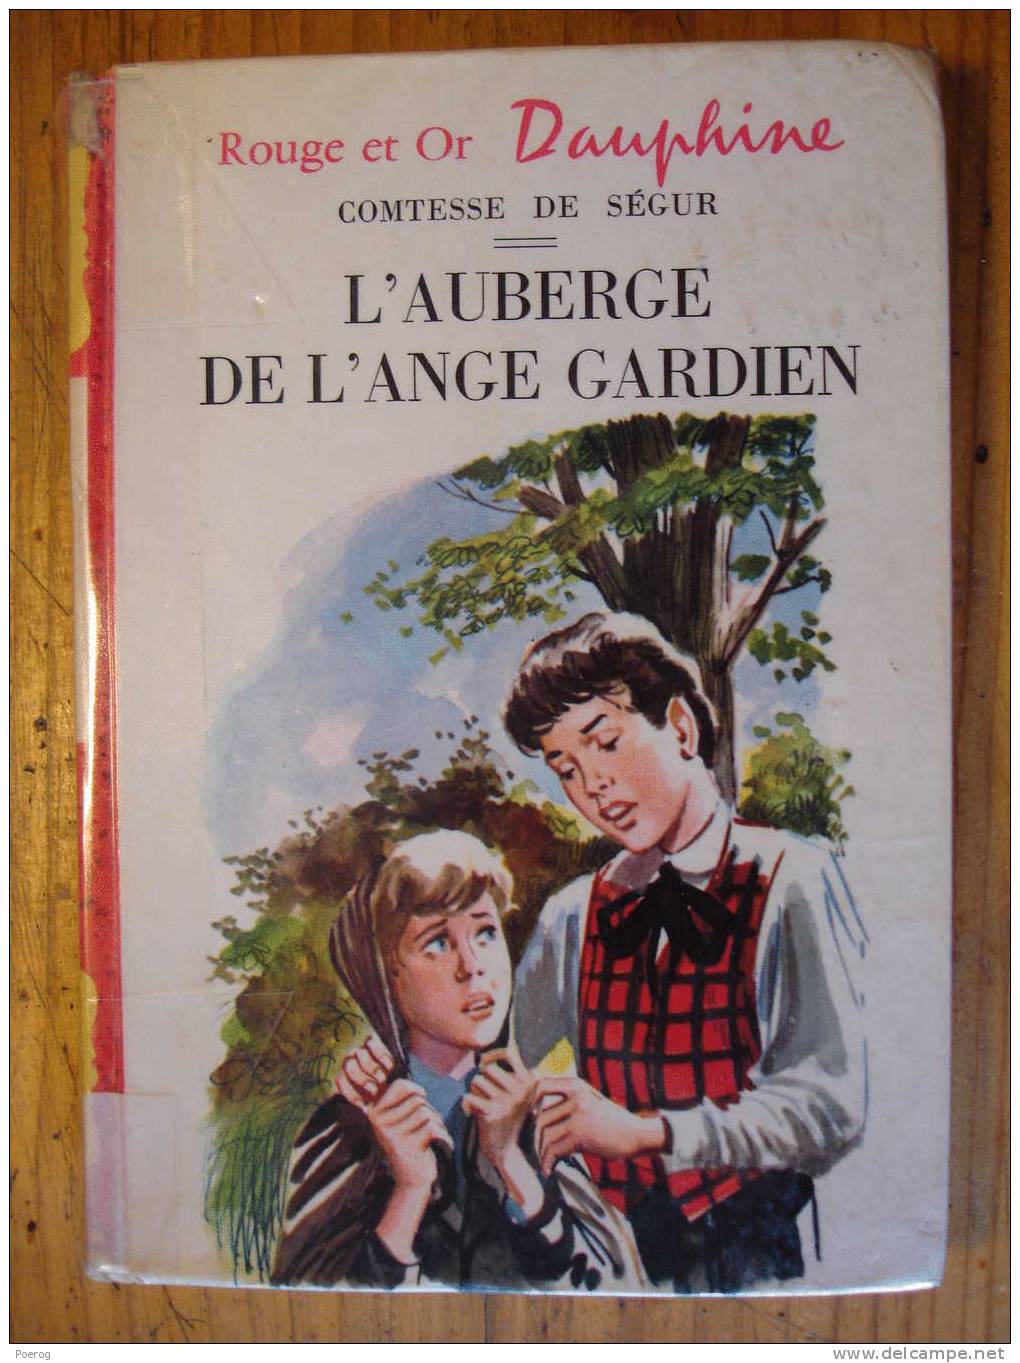 COMTESSE DE SEGUR - L'AUBERGE DE L'ANGE GARDIEN - 1964 - ROUGE ET OR DAUPHINE N°46 - ILLUSTRATIONS PIERRE LE GUEN - Bibliotheque Rouge Et Or